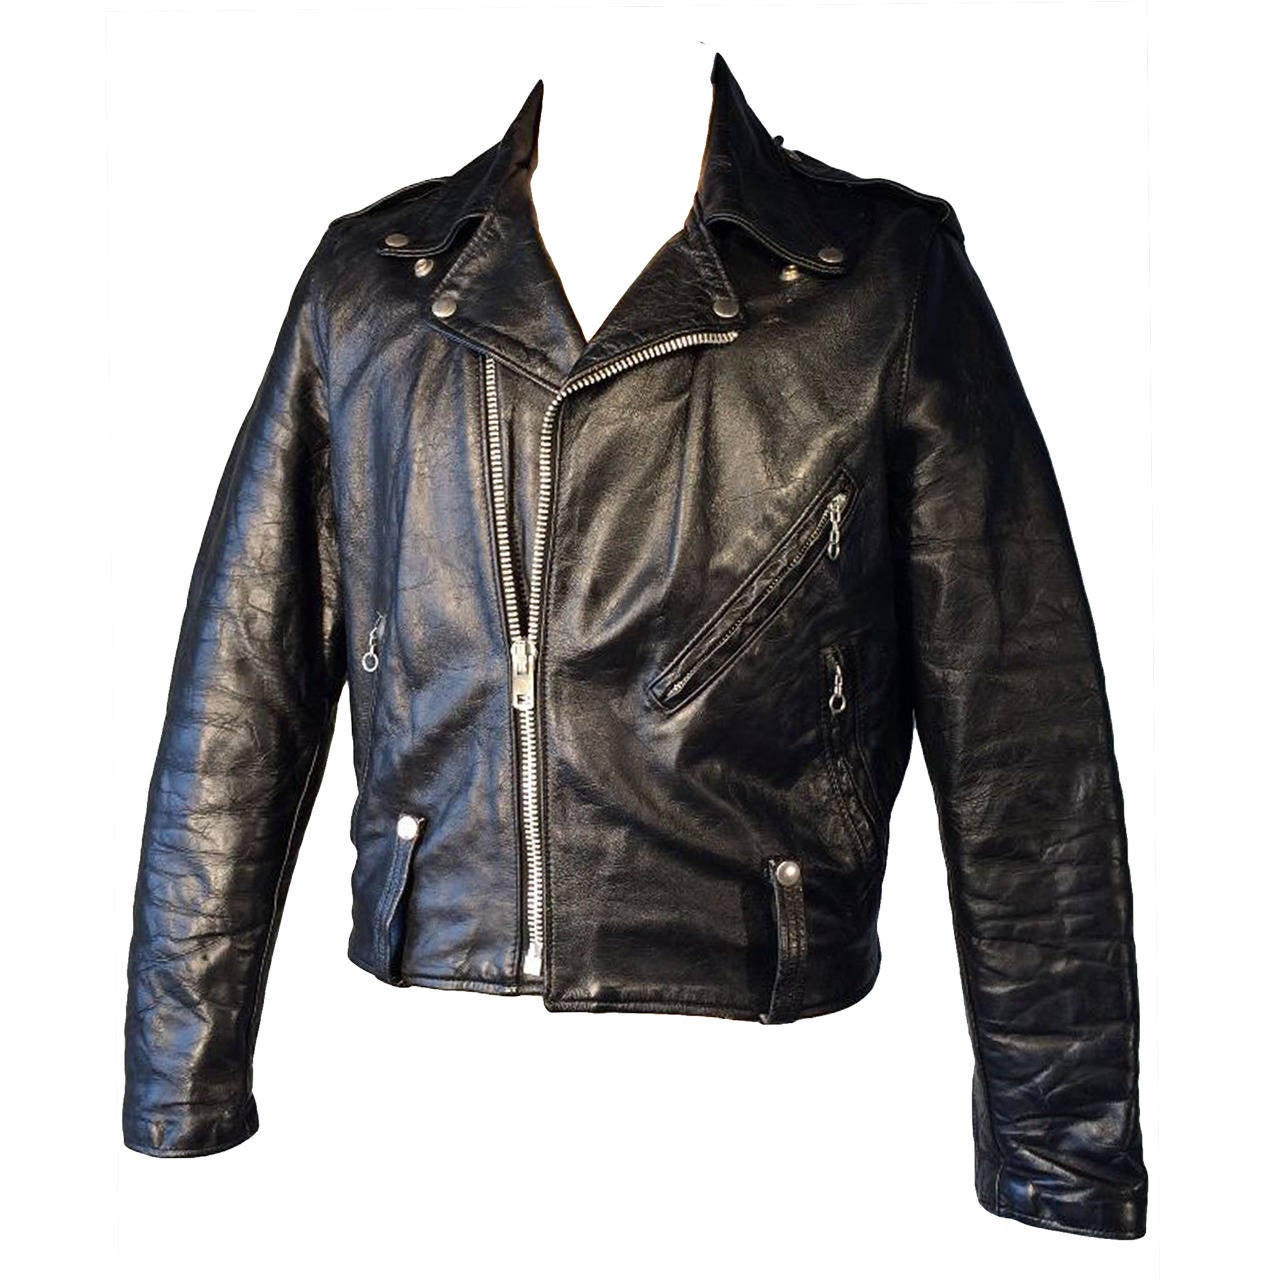  AMF Harley Davidson Leather Biker Jacket 1970s at 1stdibs